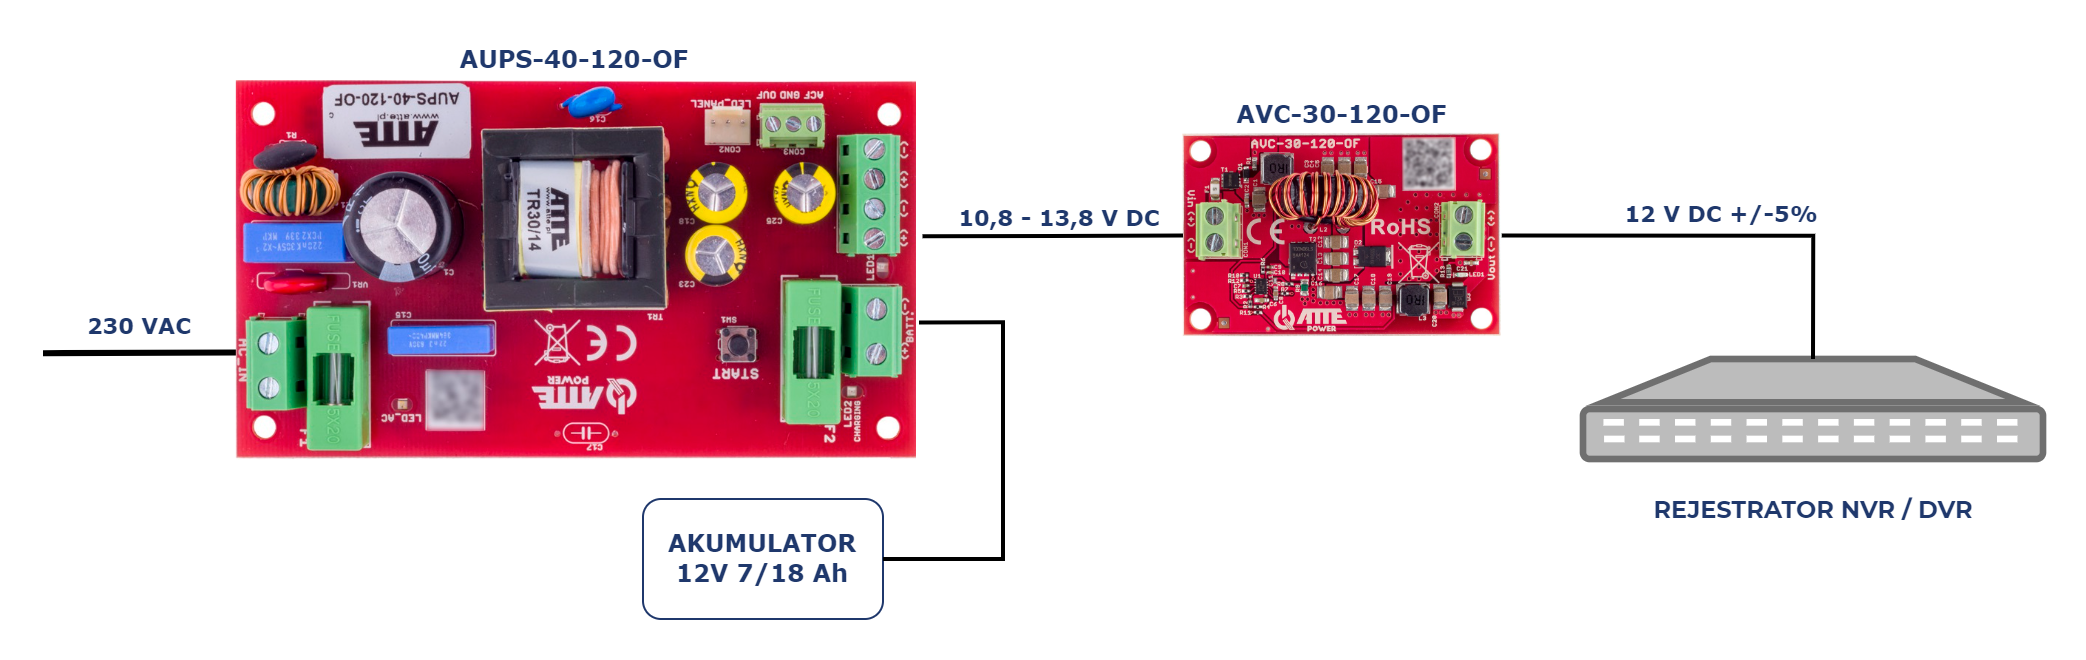 Przykład zastosowania AUPS-40-120-OF do buforowego zasilenia rejestratora NVR/DVR z wykorzystaniem modułu AVC-30-120-OF